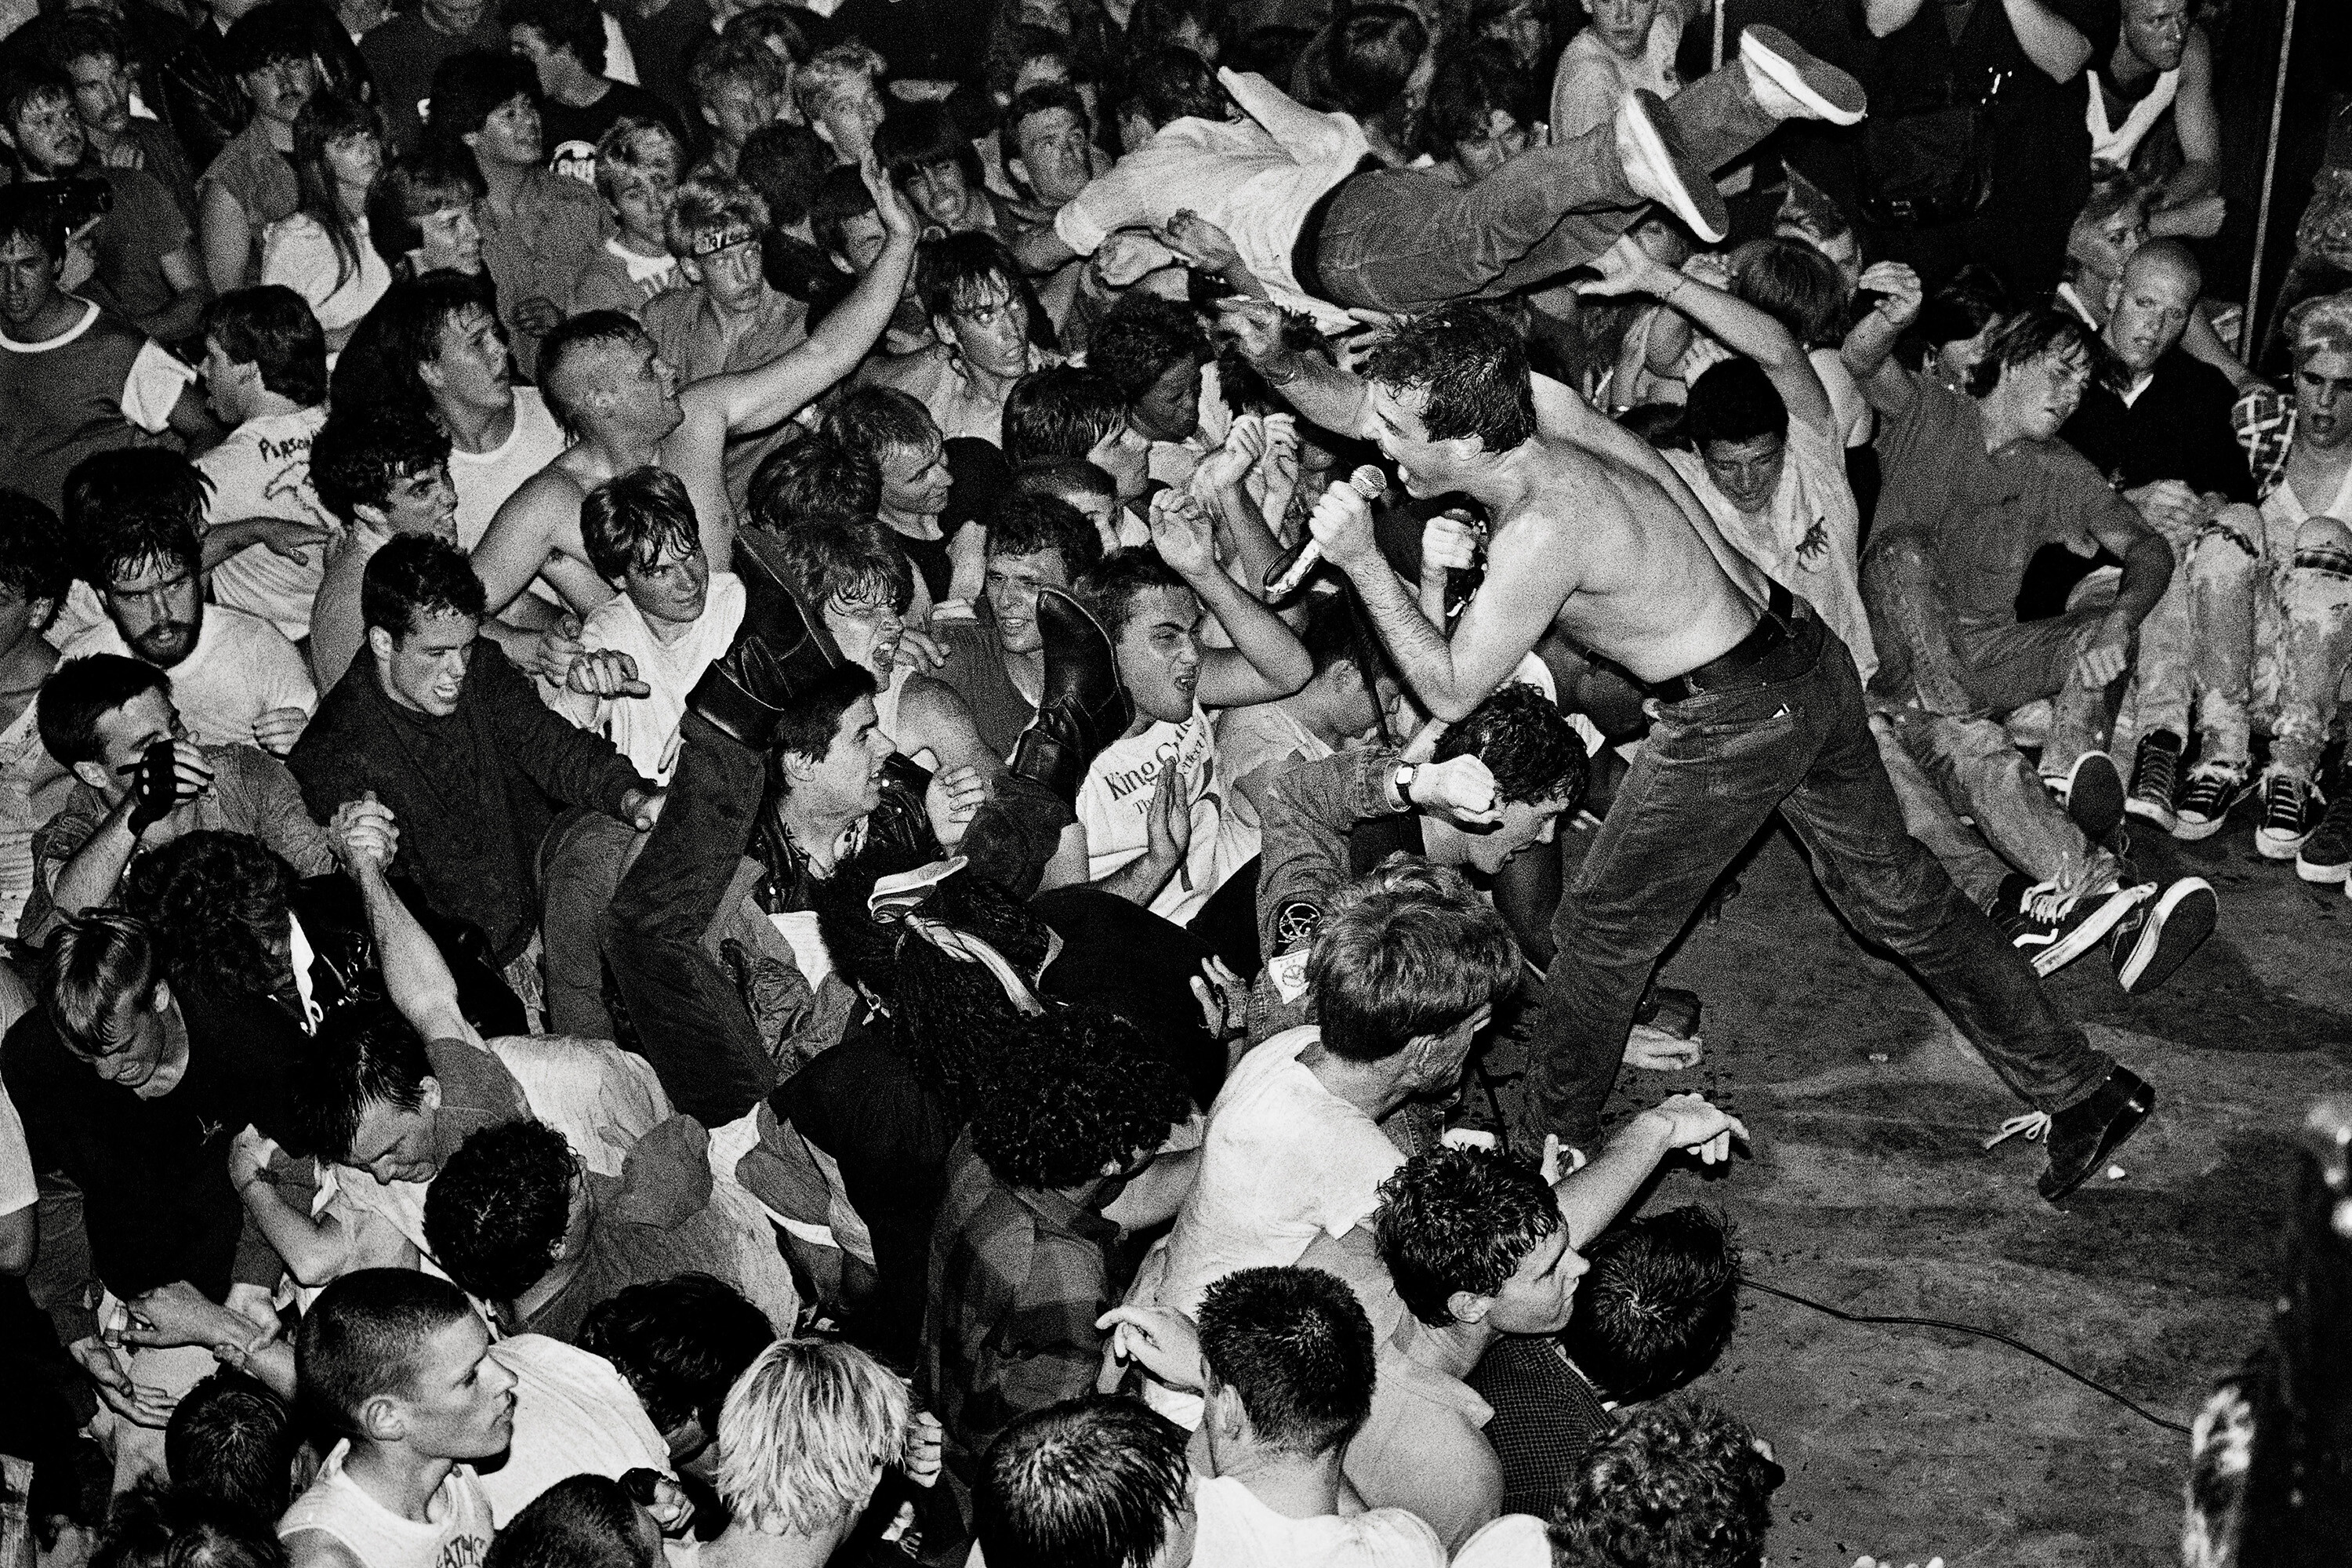 Солист группы The Dead Kennedys Джелло Биафра исполняет песню California Über Alles, клуб Mabuhay Gardens, Норт-Бич, Сан-Франциско, 1978. Фотограф Стэнли Грин